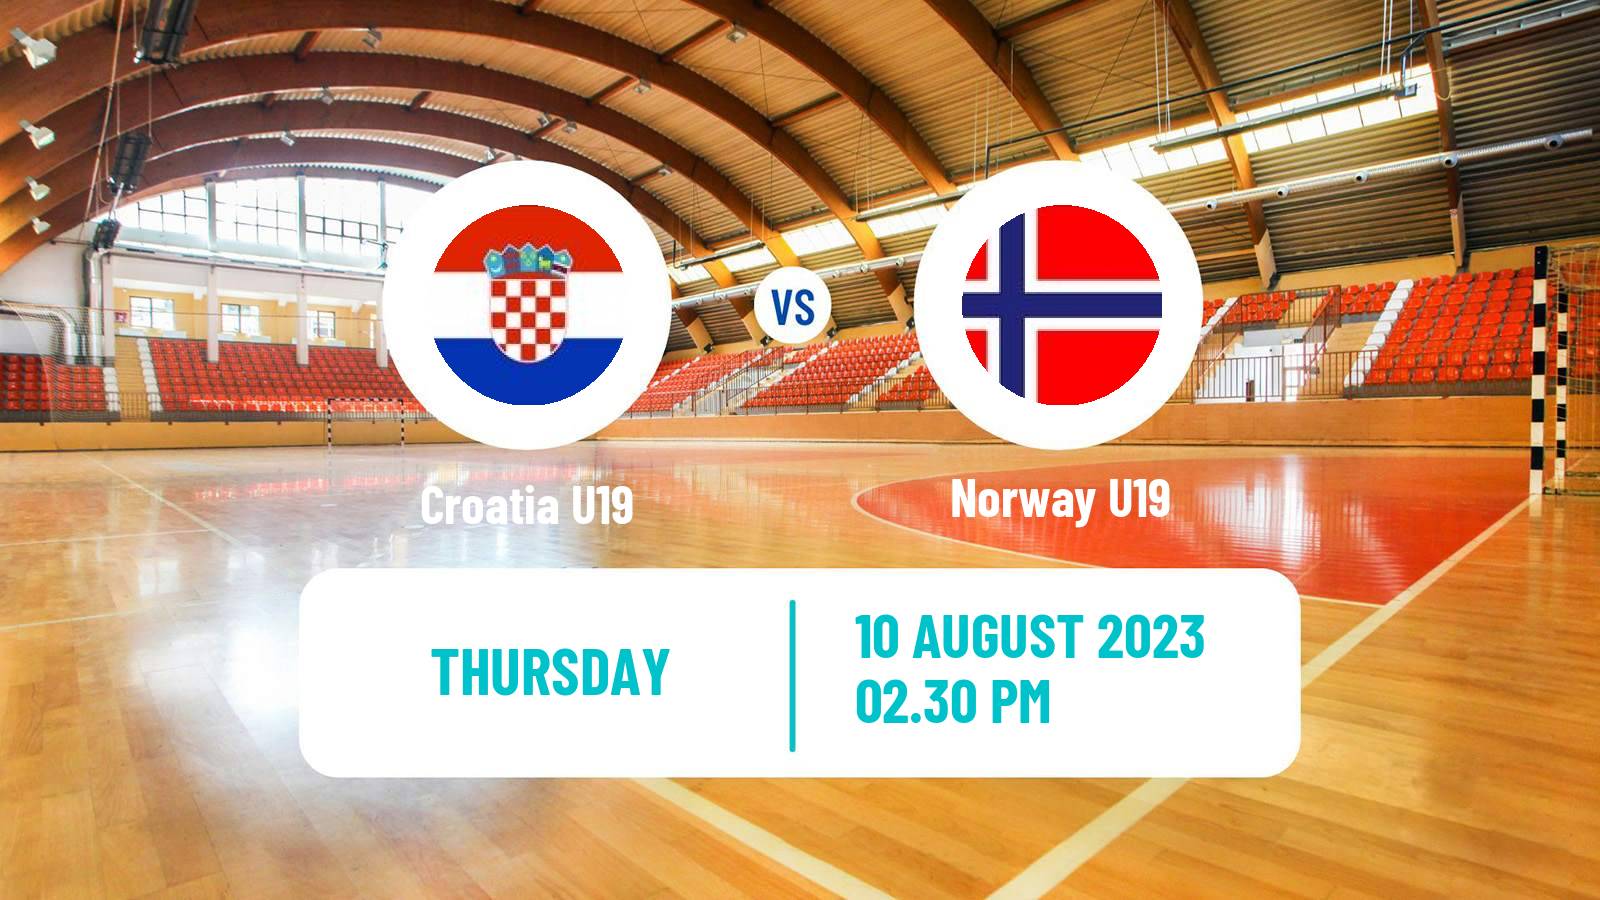 Handball World Championship U19 Handball Croatia U19 - Norway U19